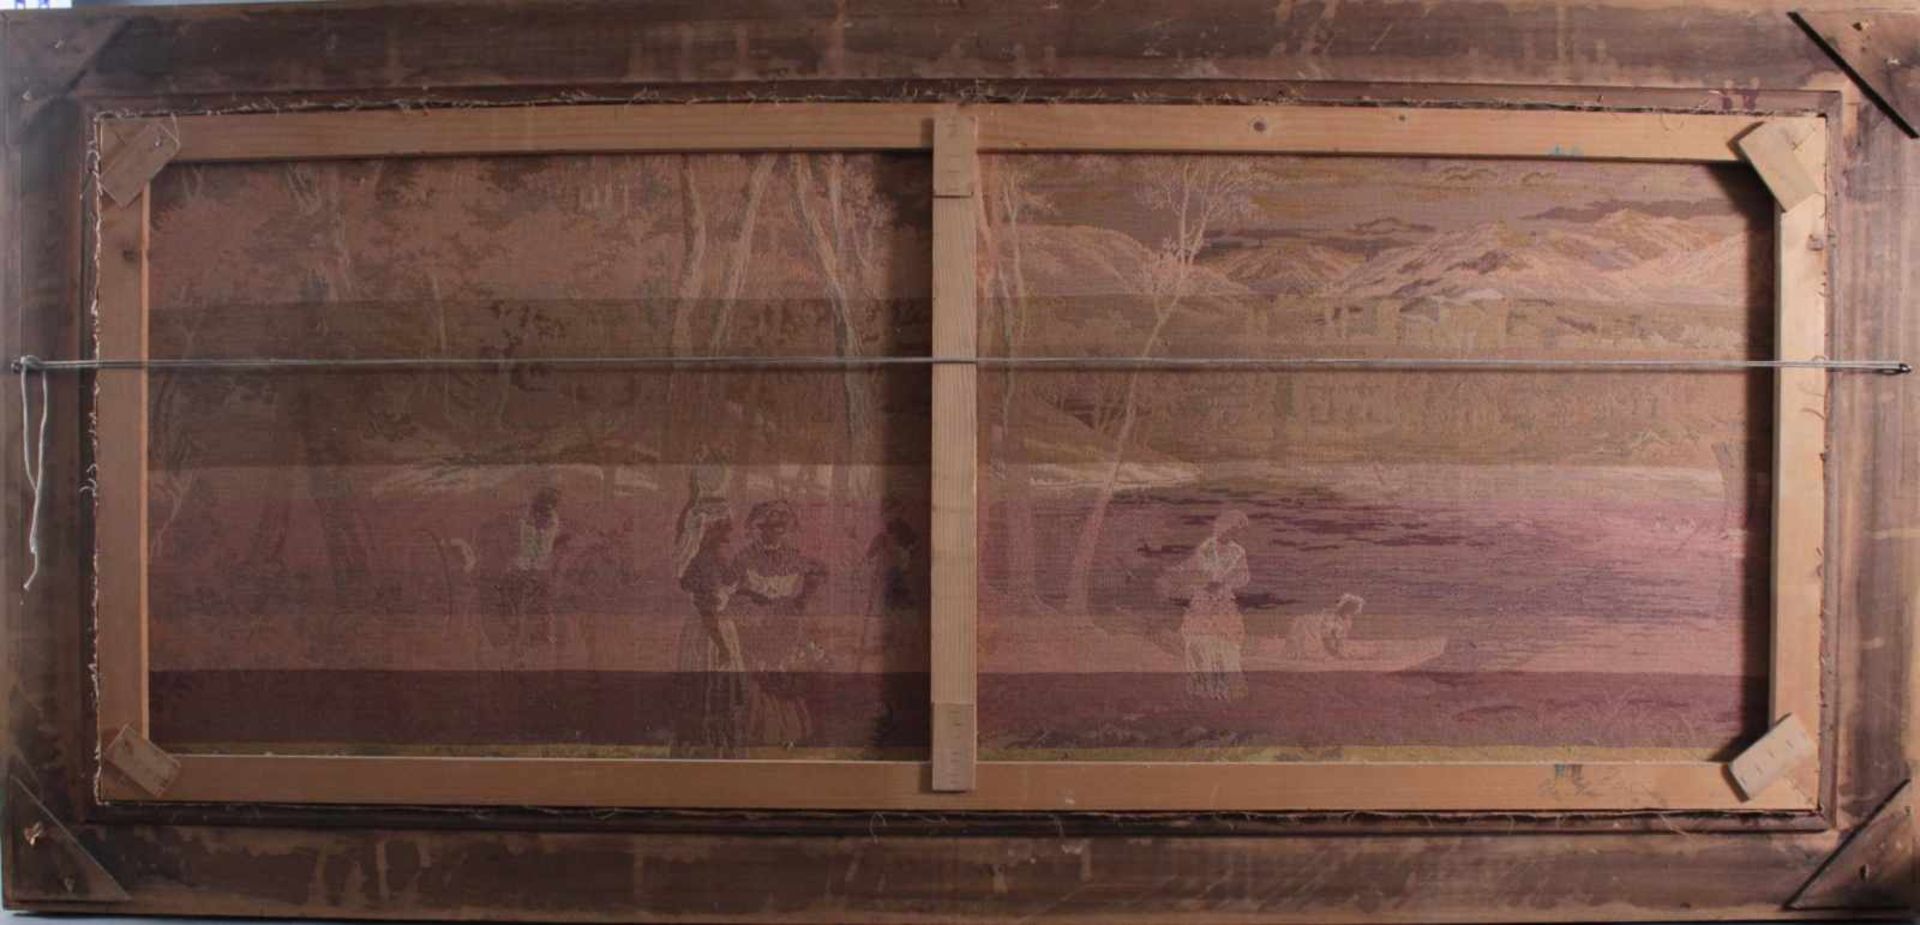 Großer Gobelin, mittelalterliche Szene, 2. Hälfte 20. Jh.Massiv geschnitzter Holzrahmen, ca. 70 × - Image 4 of 4